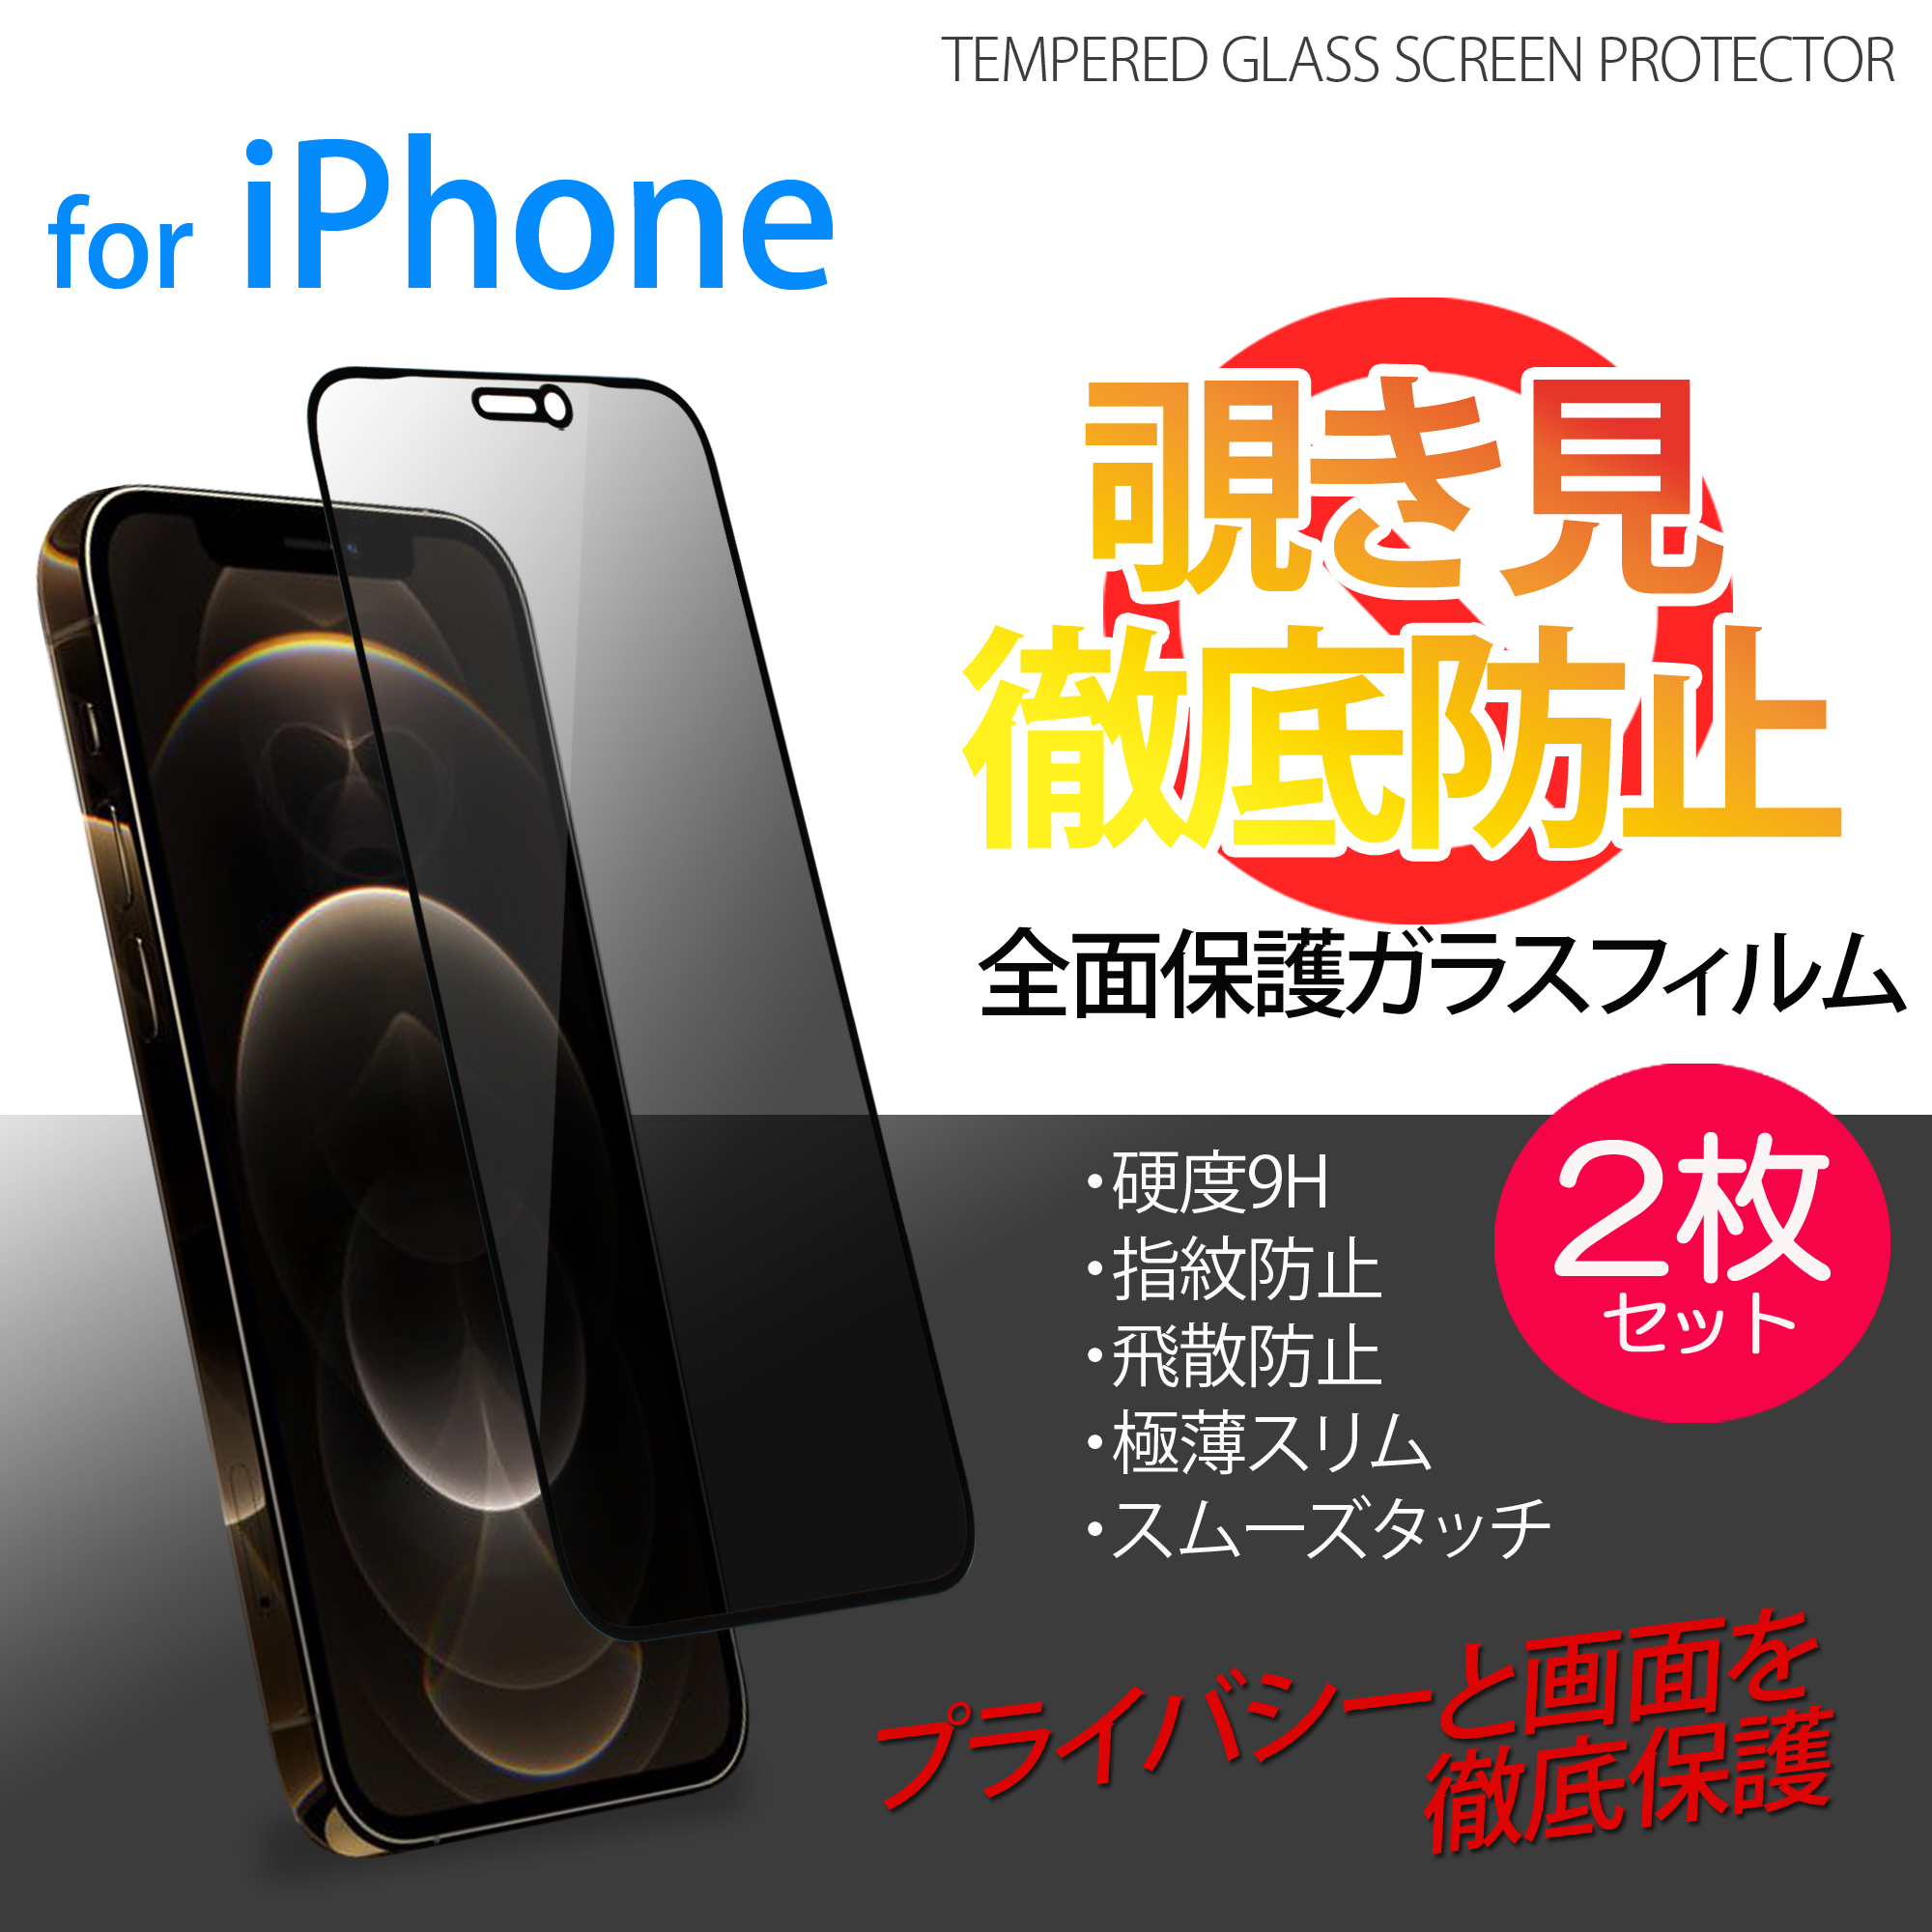 覗き見防止 全面保護ガラスフィルム 枠付き 2枚セット iPhone12 Pro Max iPhone12mini iPhone11 iPhoneXR  iPhoneXS Max - whitenuts(ホワイトナッツ)